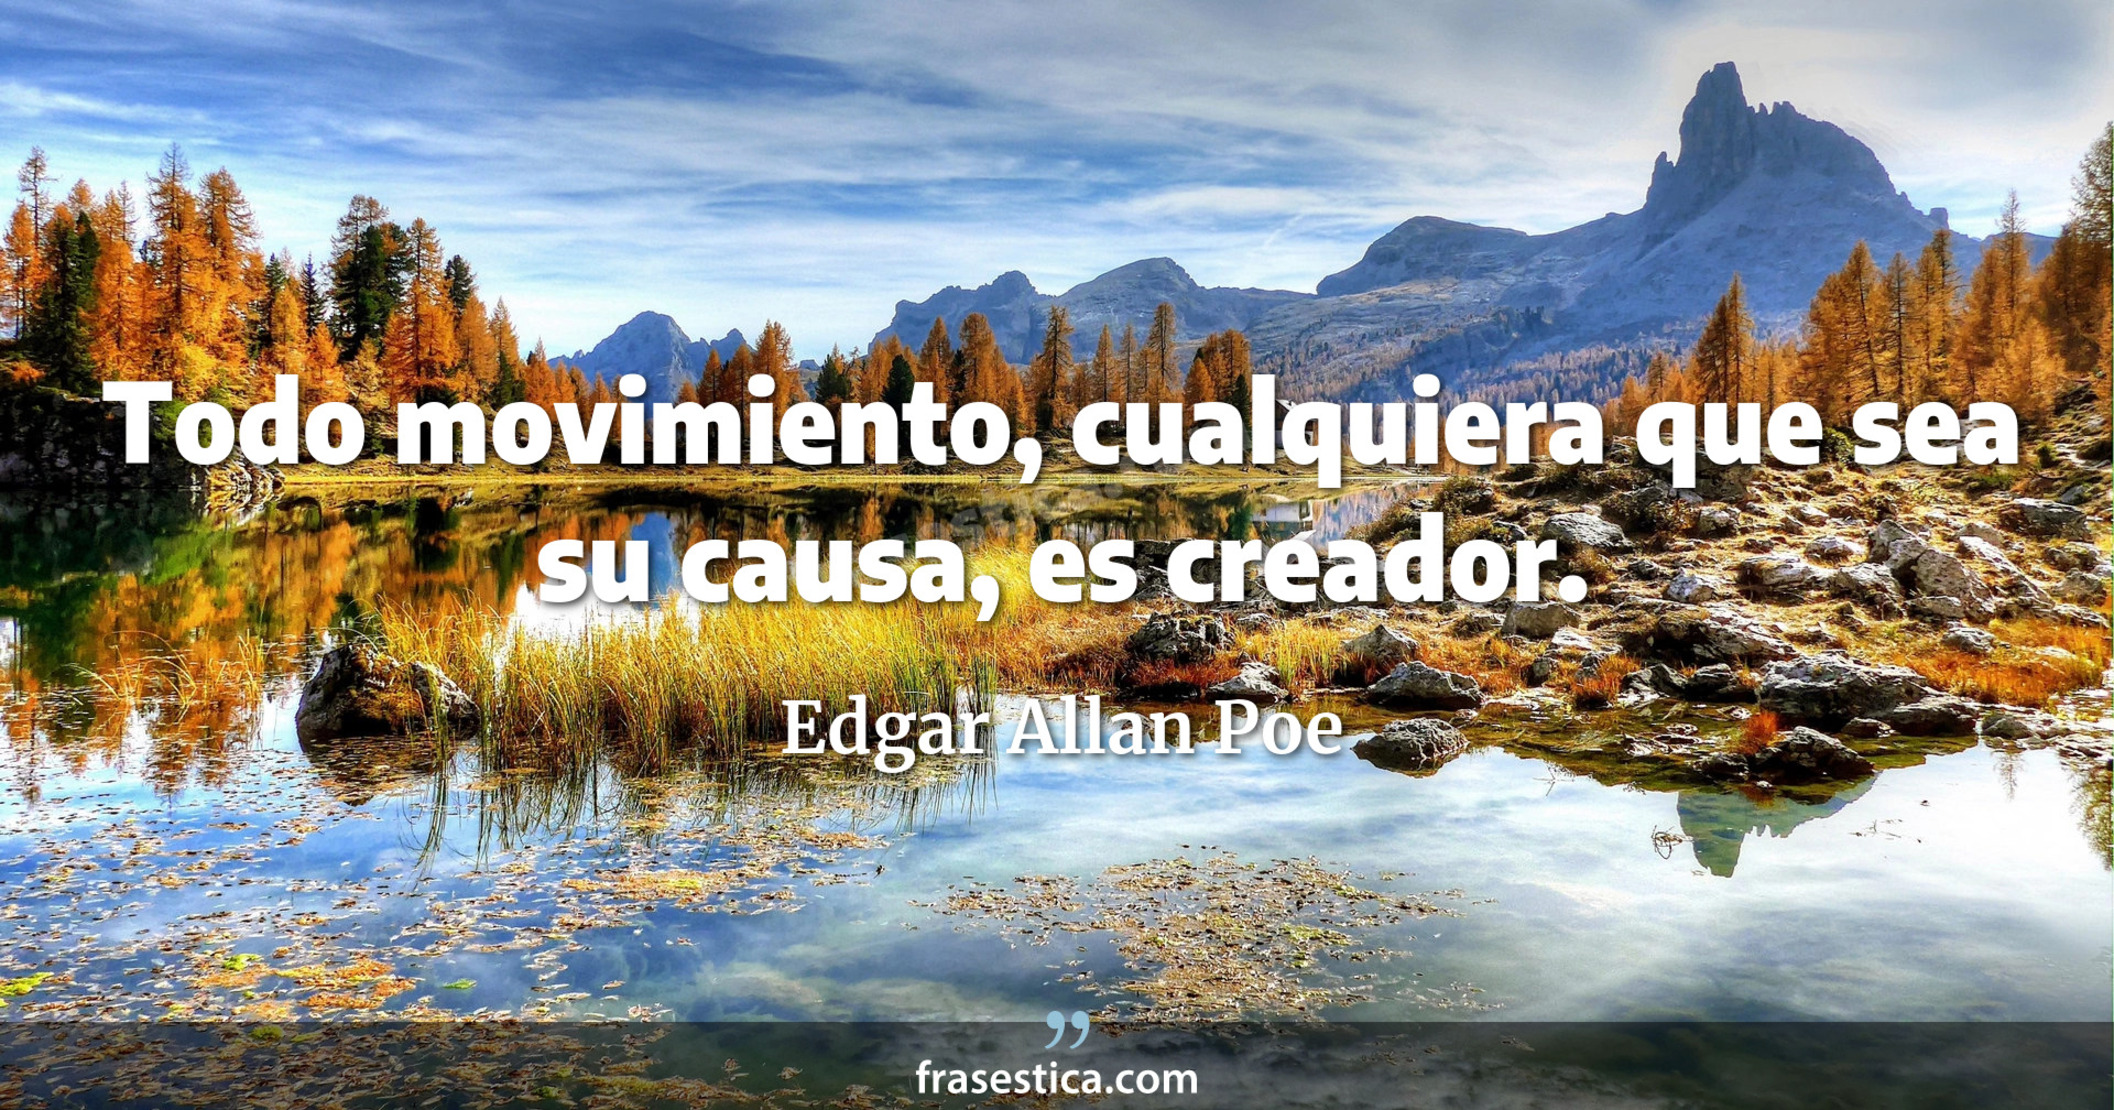 Todo movimiento, cualquiera que sea su causa, es creador. - Edgar Allan Poe